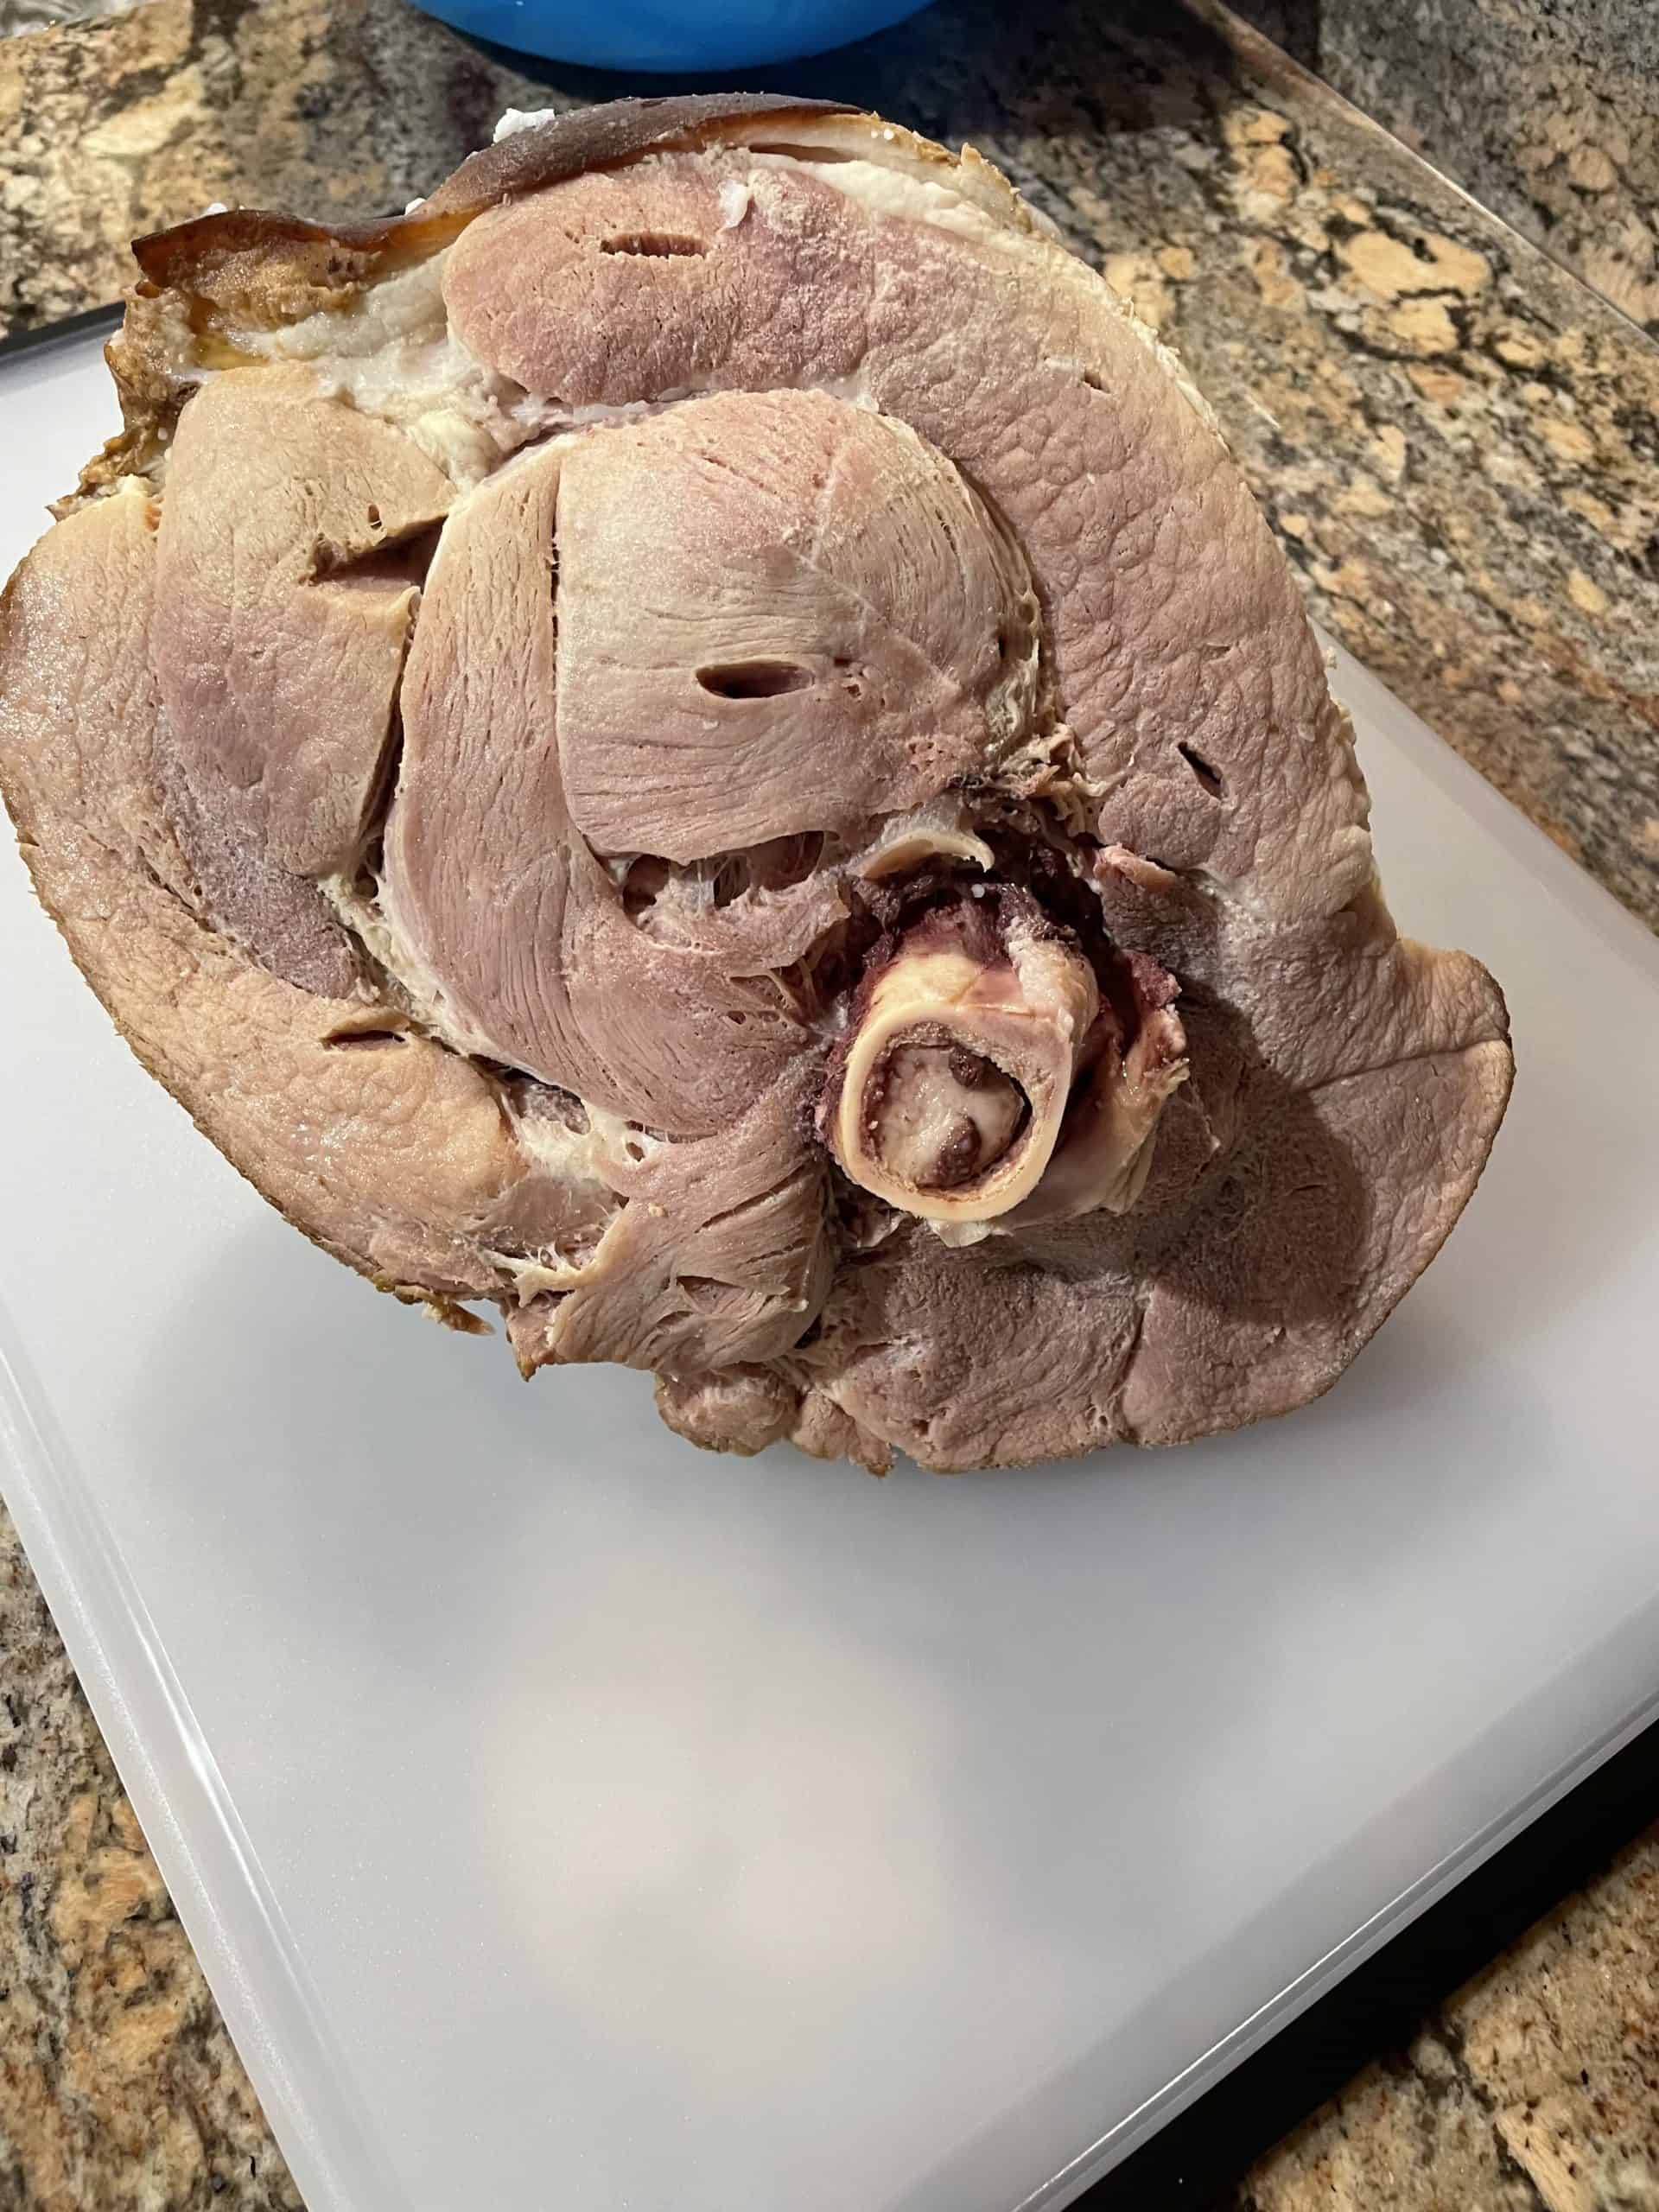 A Boiled Ham on a cutting board.